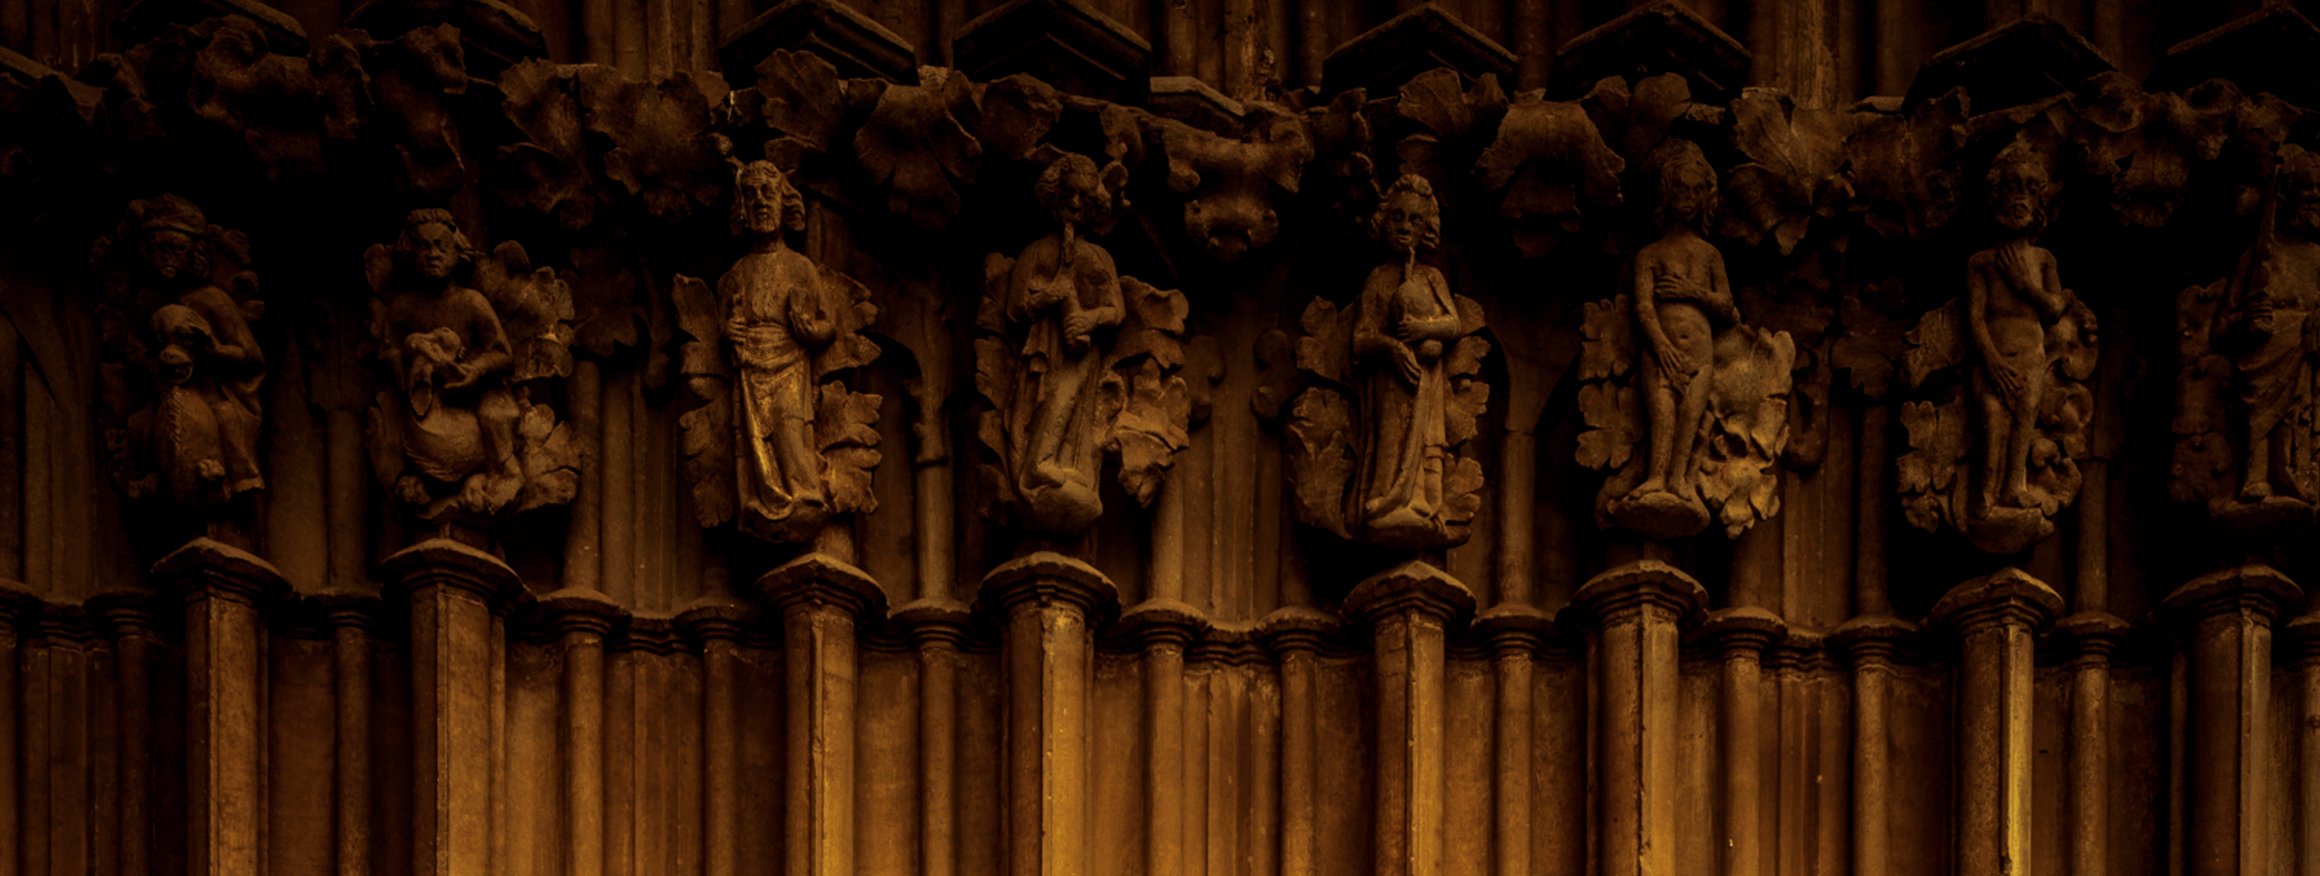 Die Kirchensäulen mit Heiligenfiguren im Innenraum eines Gotteshauses